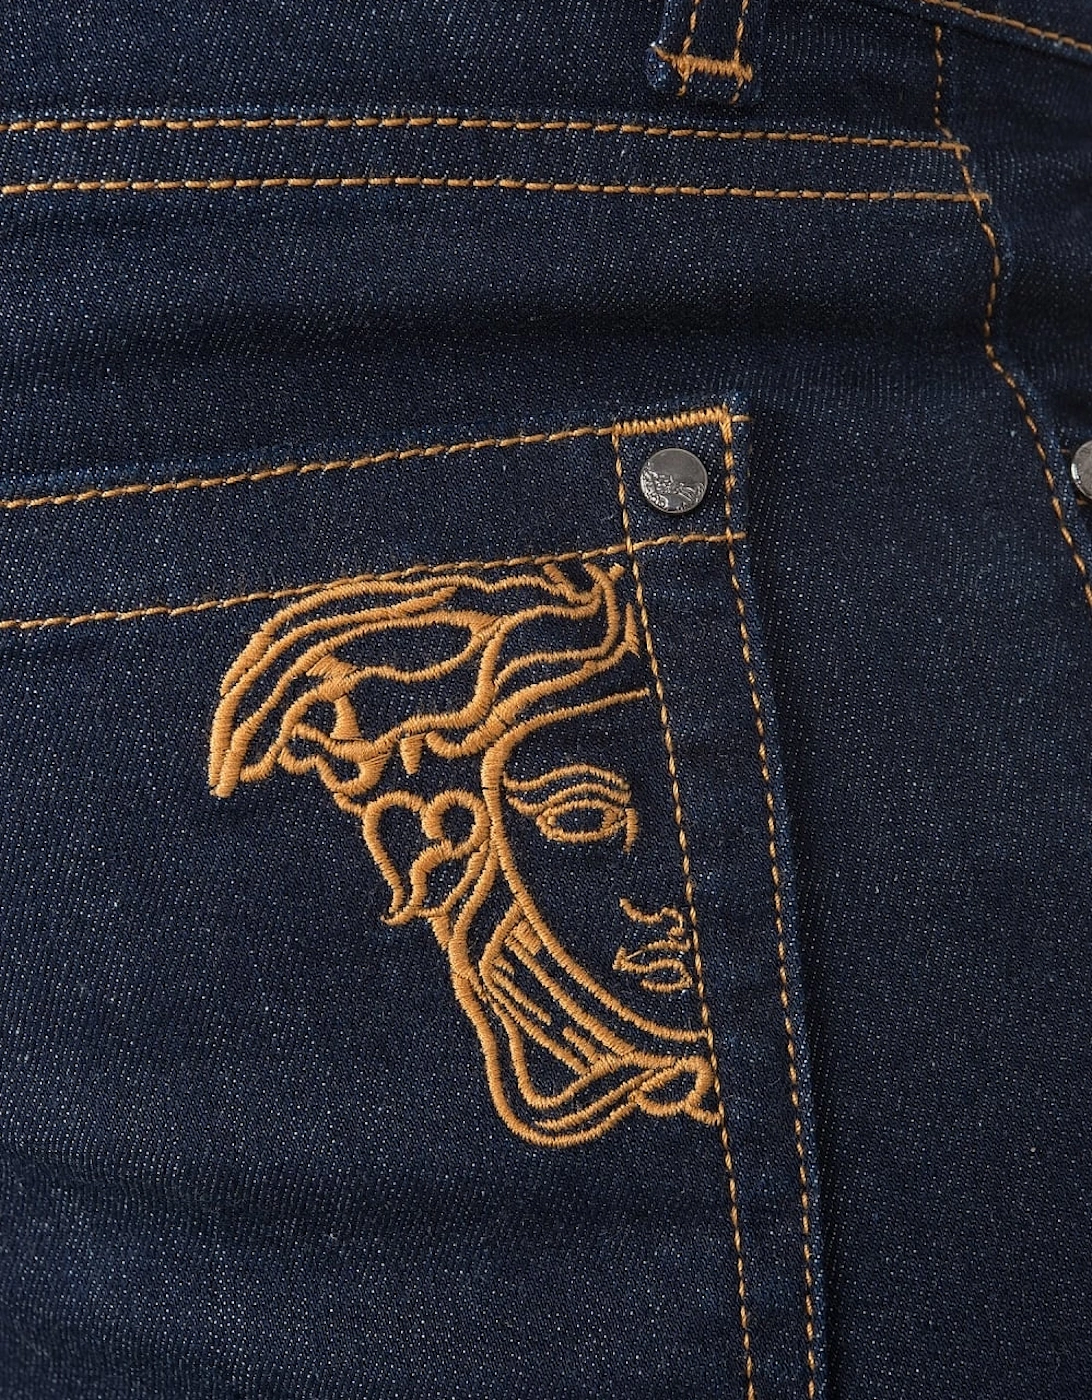 Logo Pocket Jeans